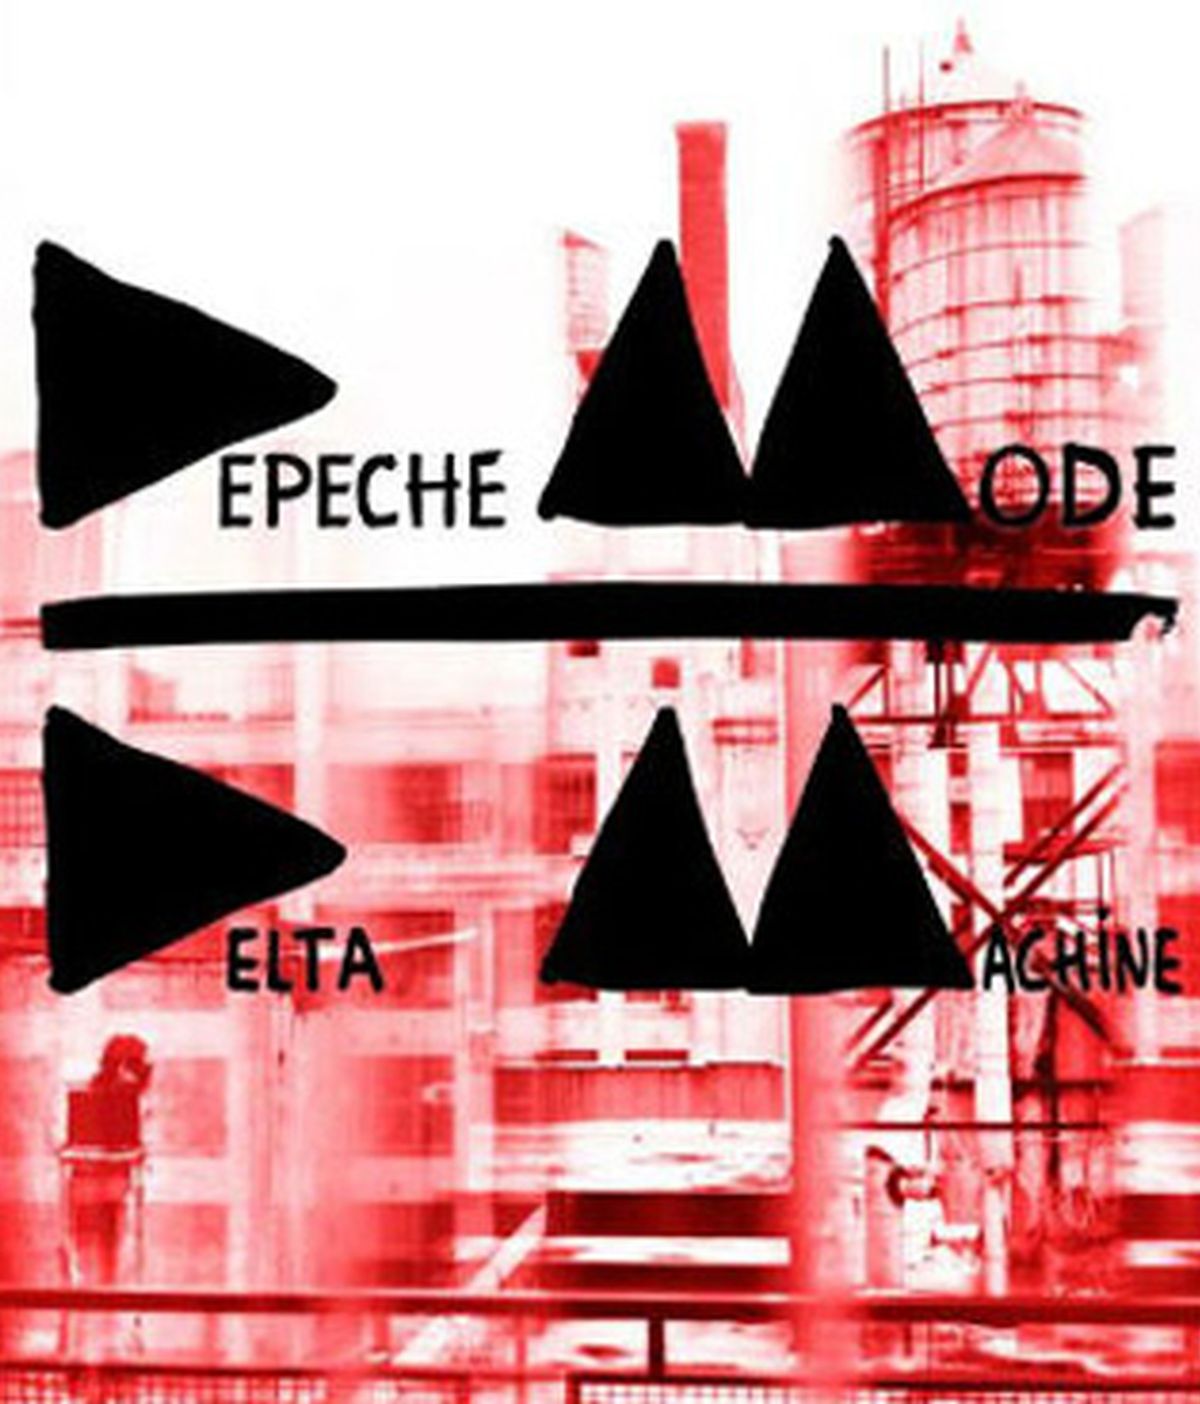 Depeche Mode publica su nuevo disco, 'Delta machine'